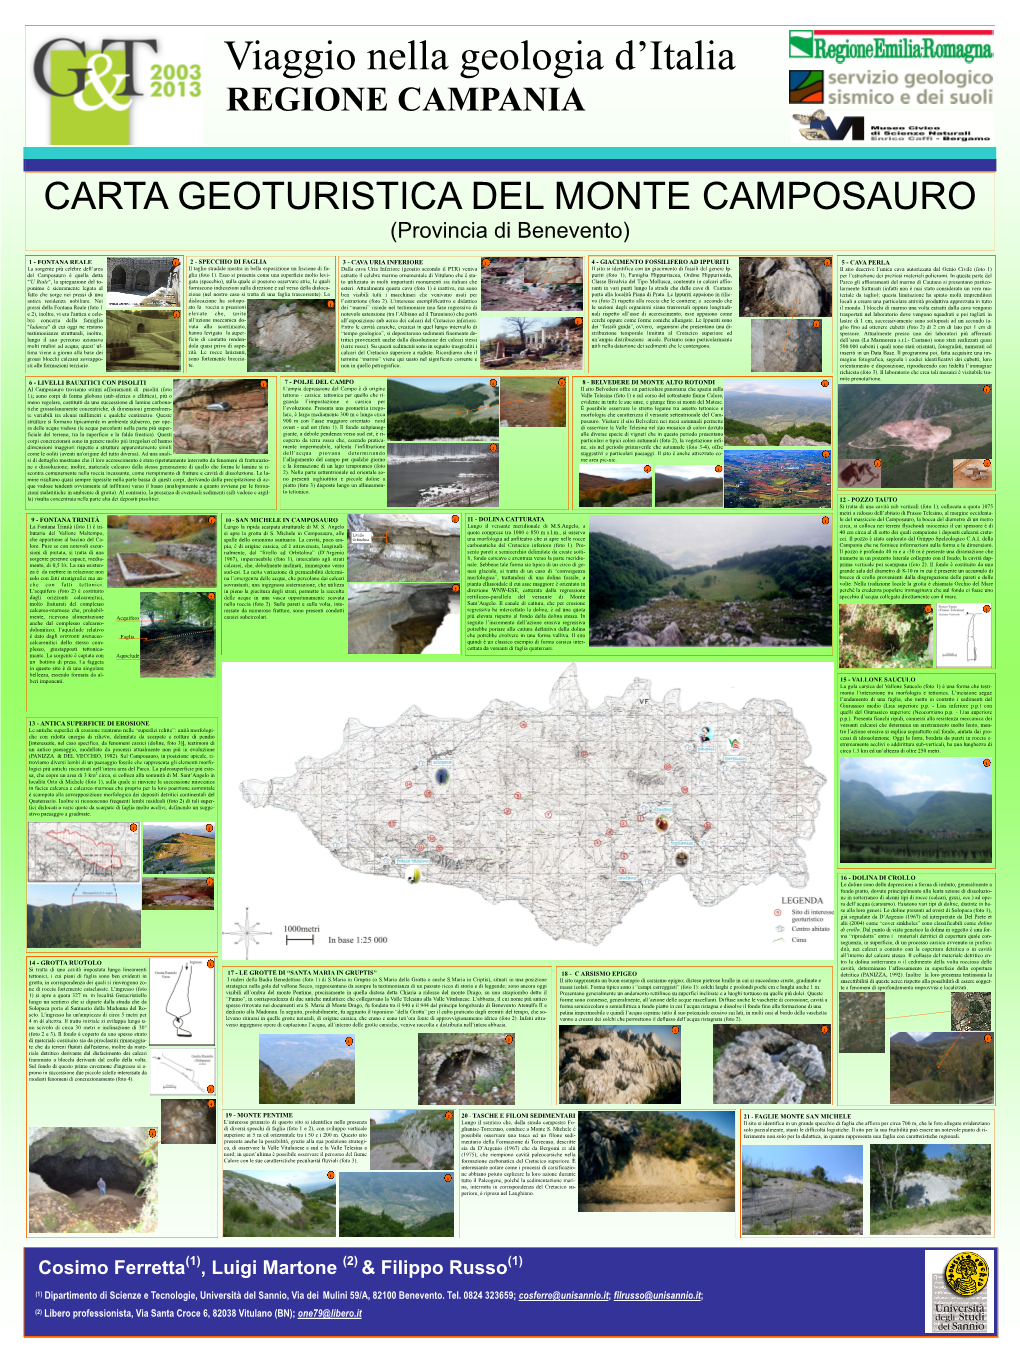 Viaggio Nella Geologia D'italia